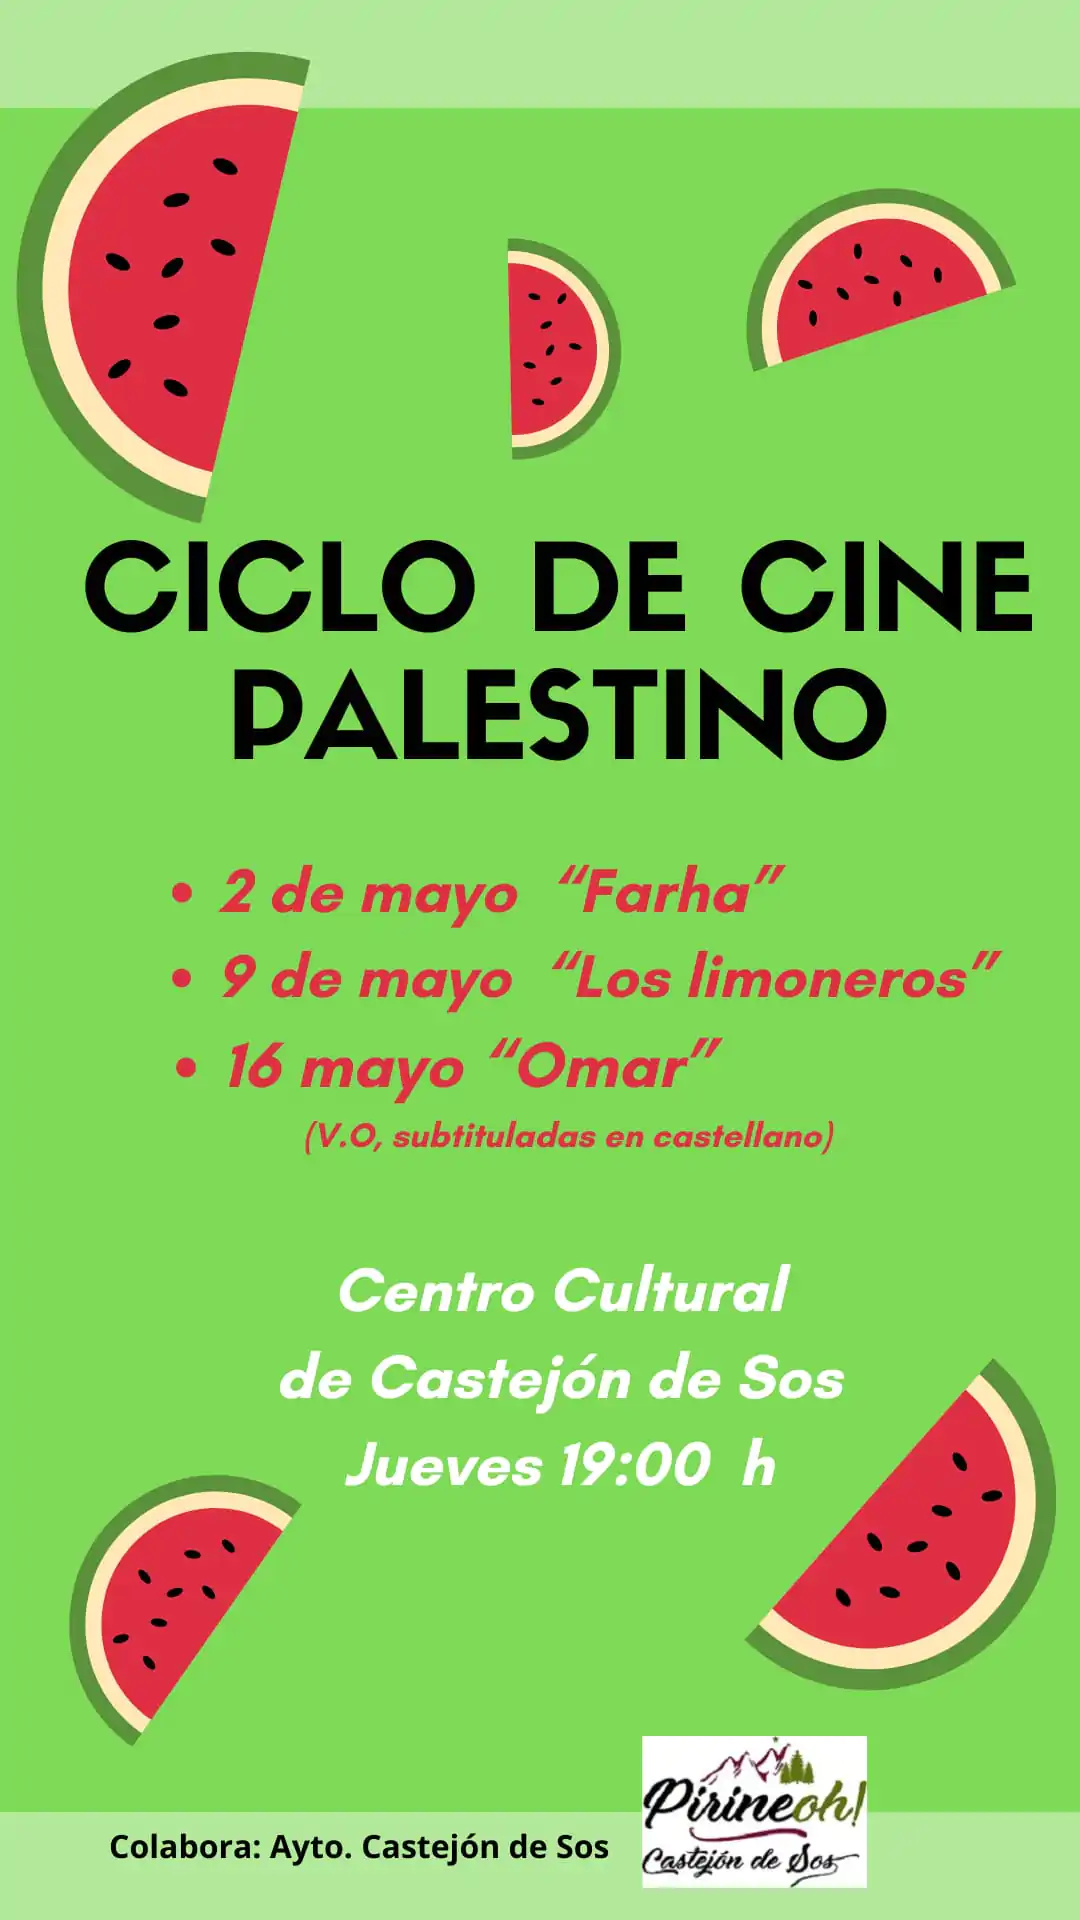 Ciclo de cine palestino en Castejón de Sos | enBenas.com